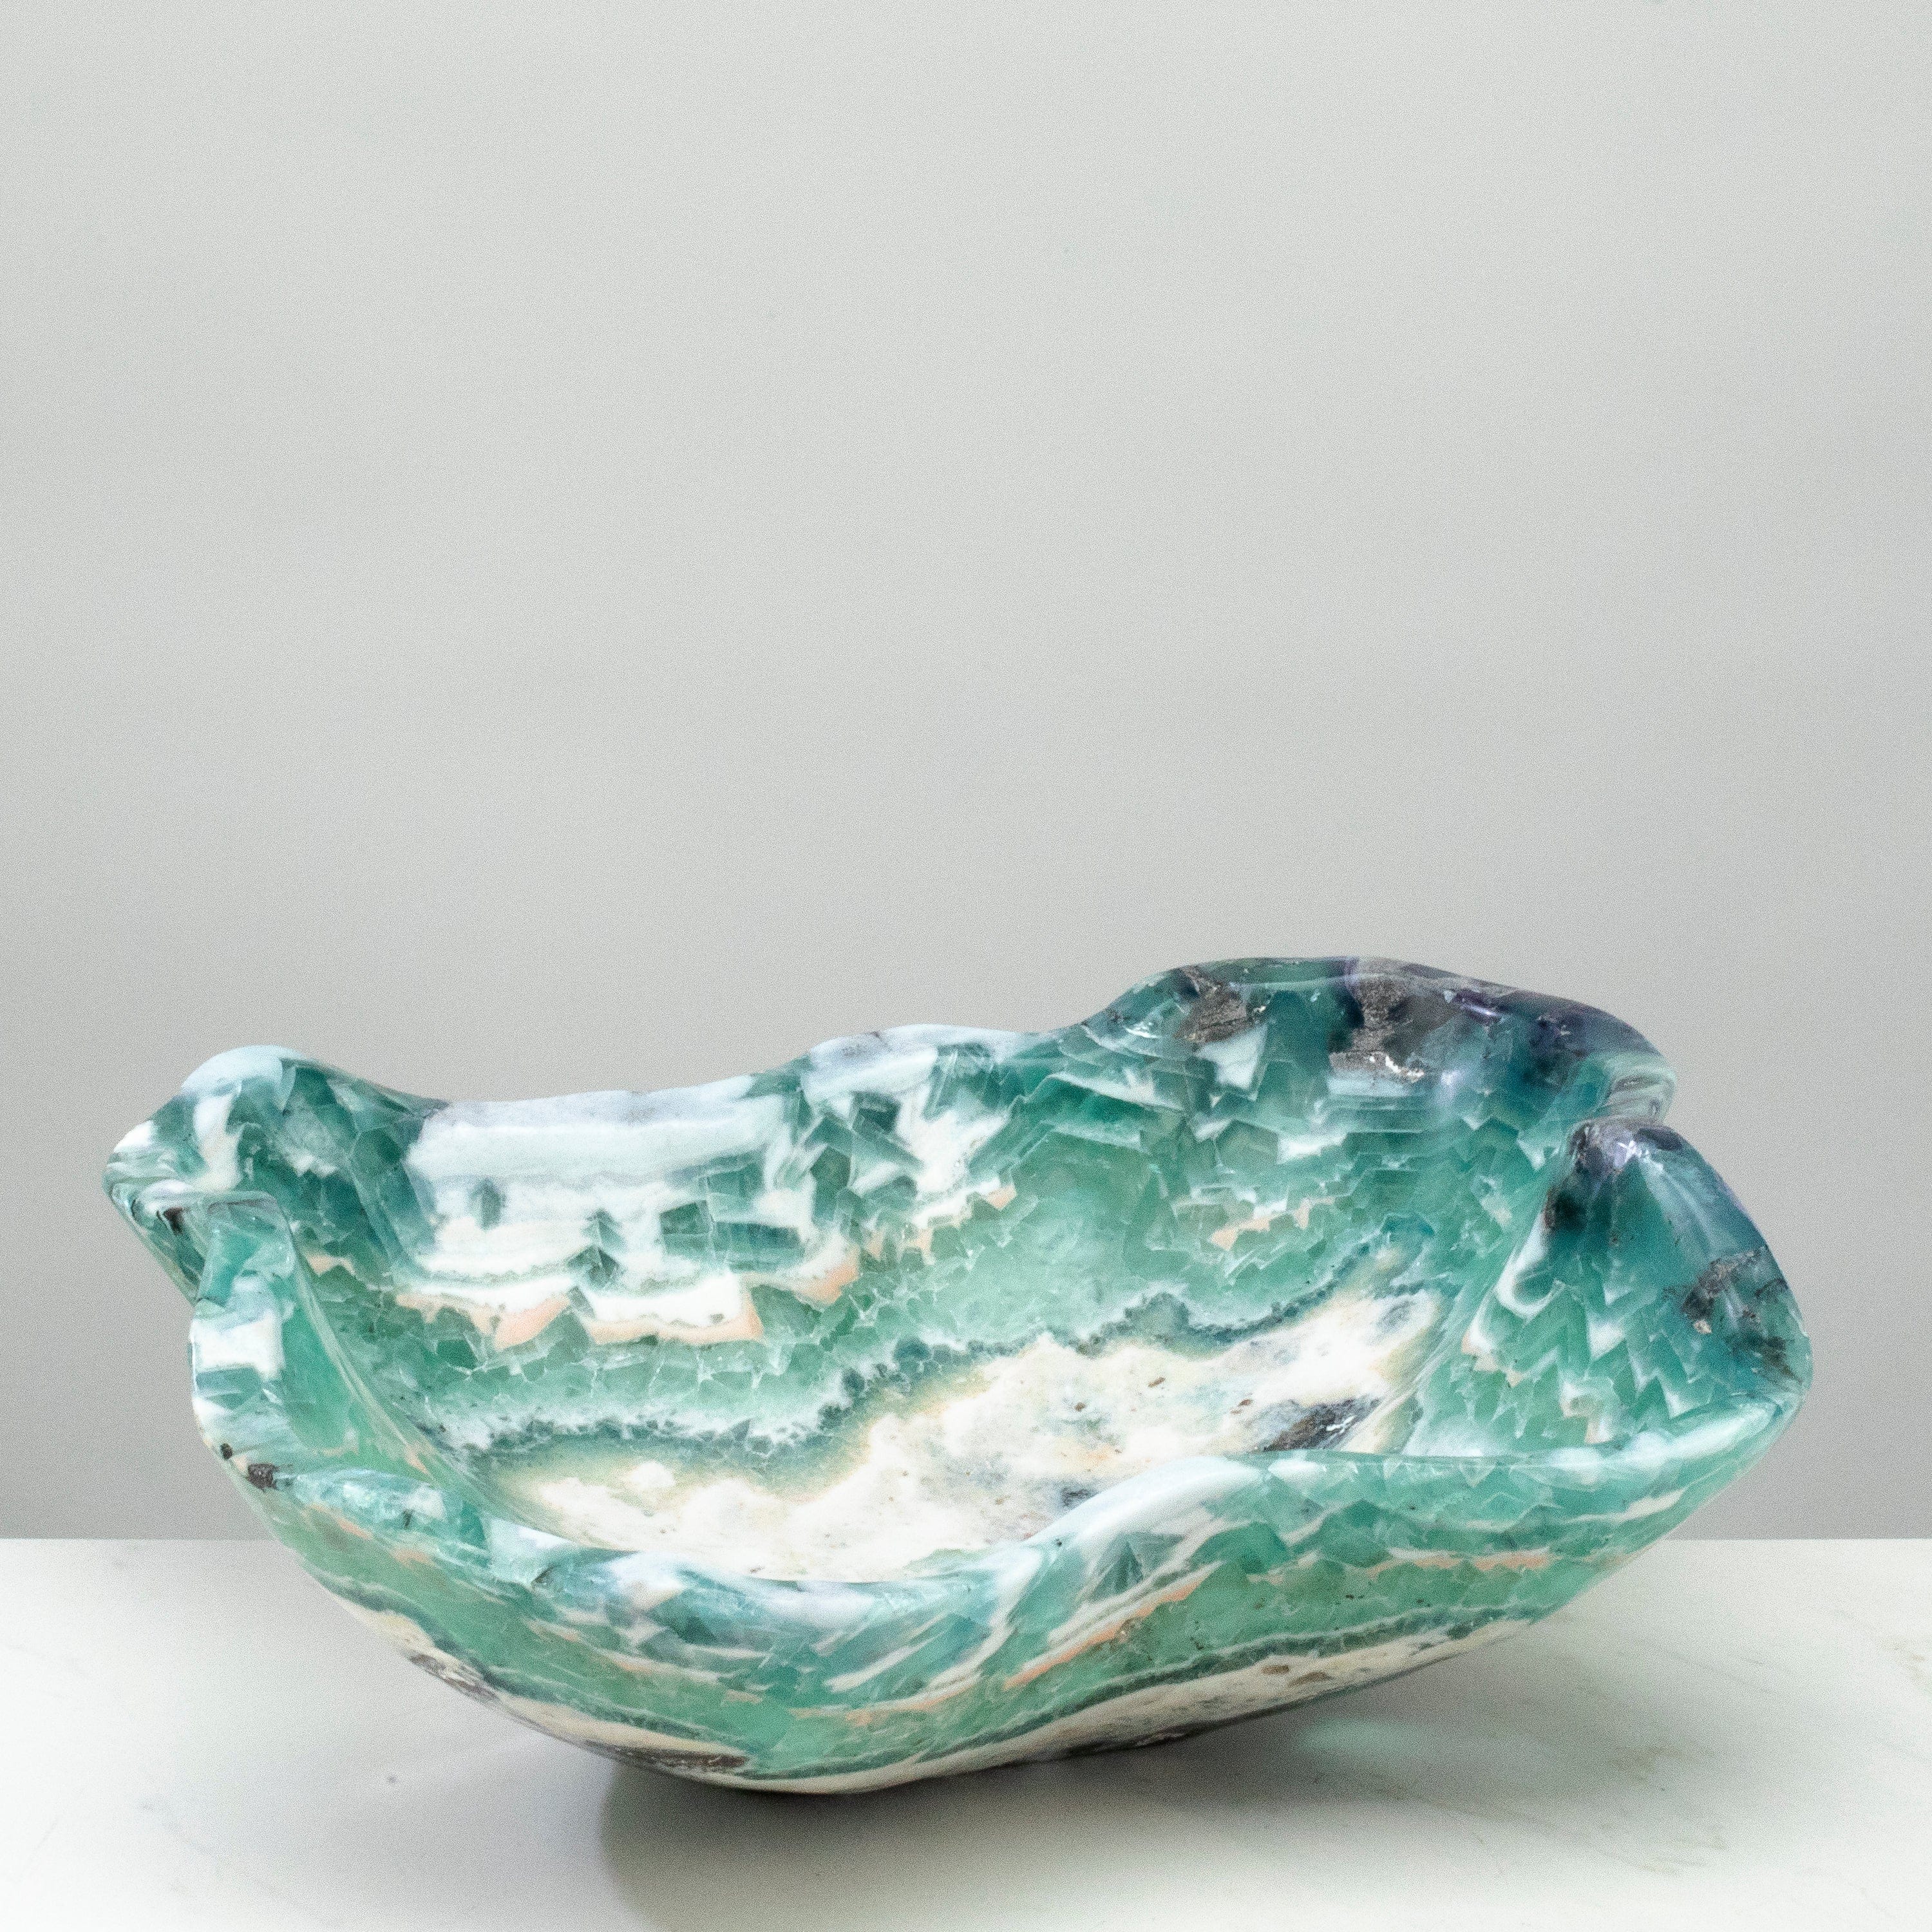 KALIFANO Gemstone Bowls Natural Blue / Green Fluorite Bowl 16" BFL8000.003